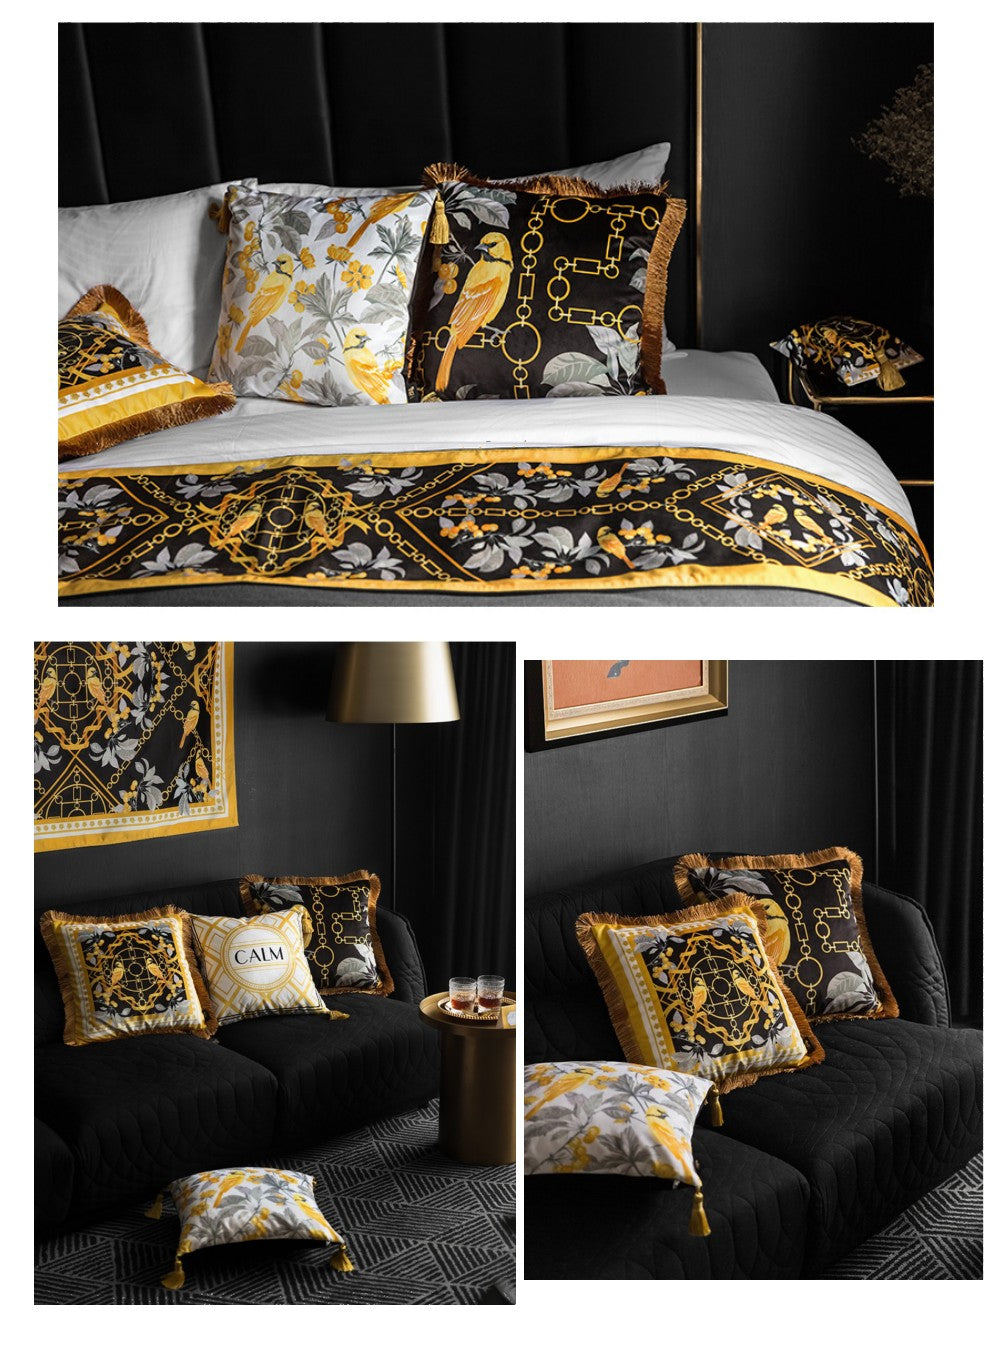 Short velvet Pillow Cover, Decorative Throw Pillow, Pillow Cases, Sofa Pillows, Home Decor